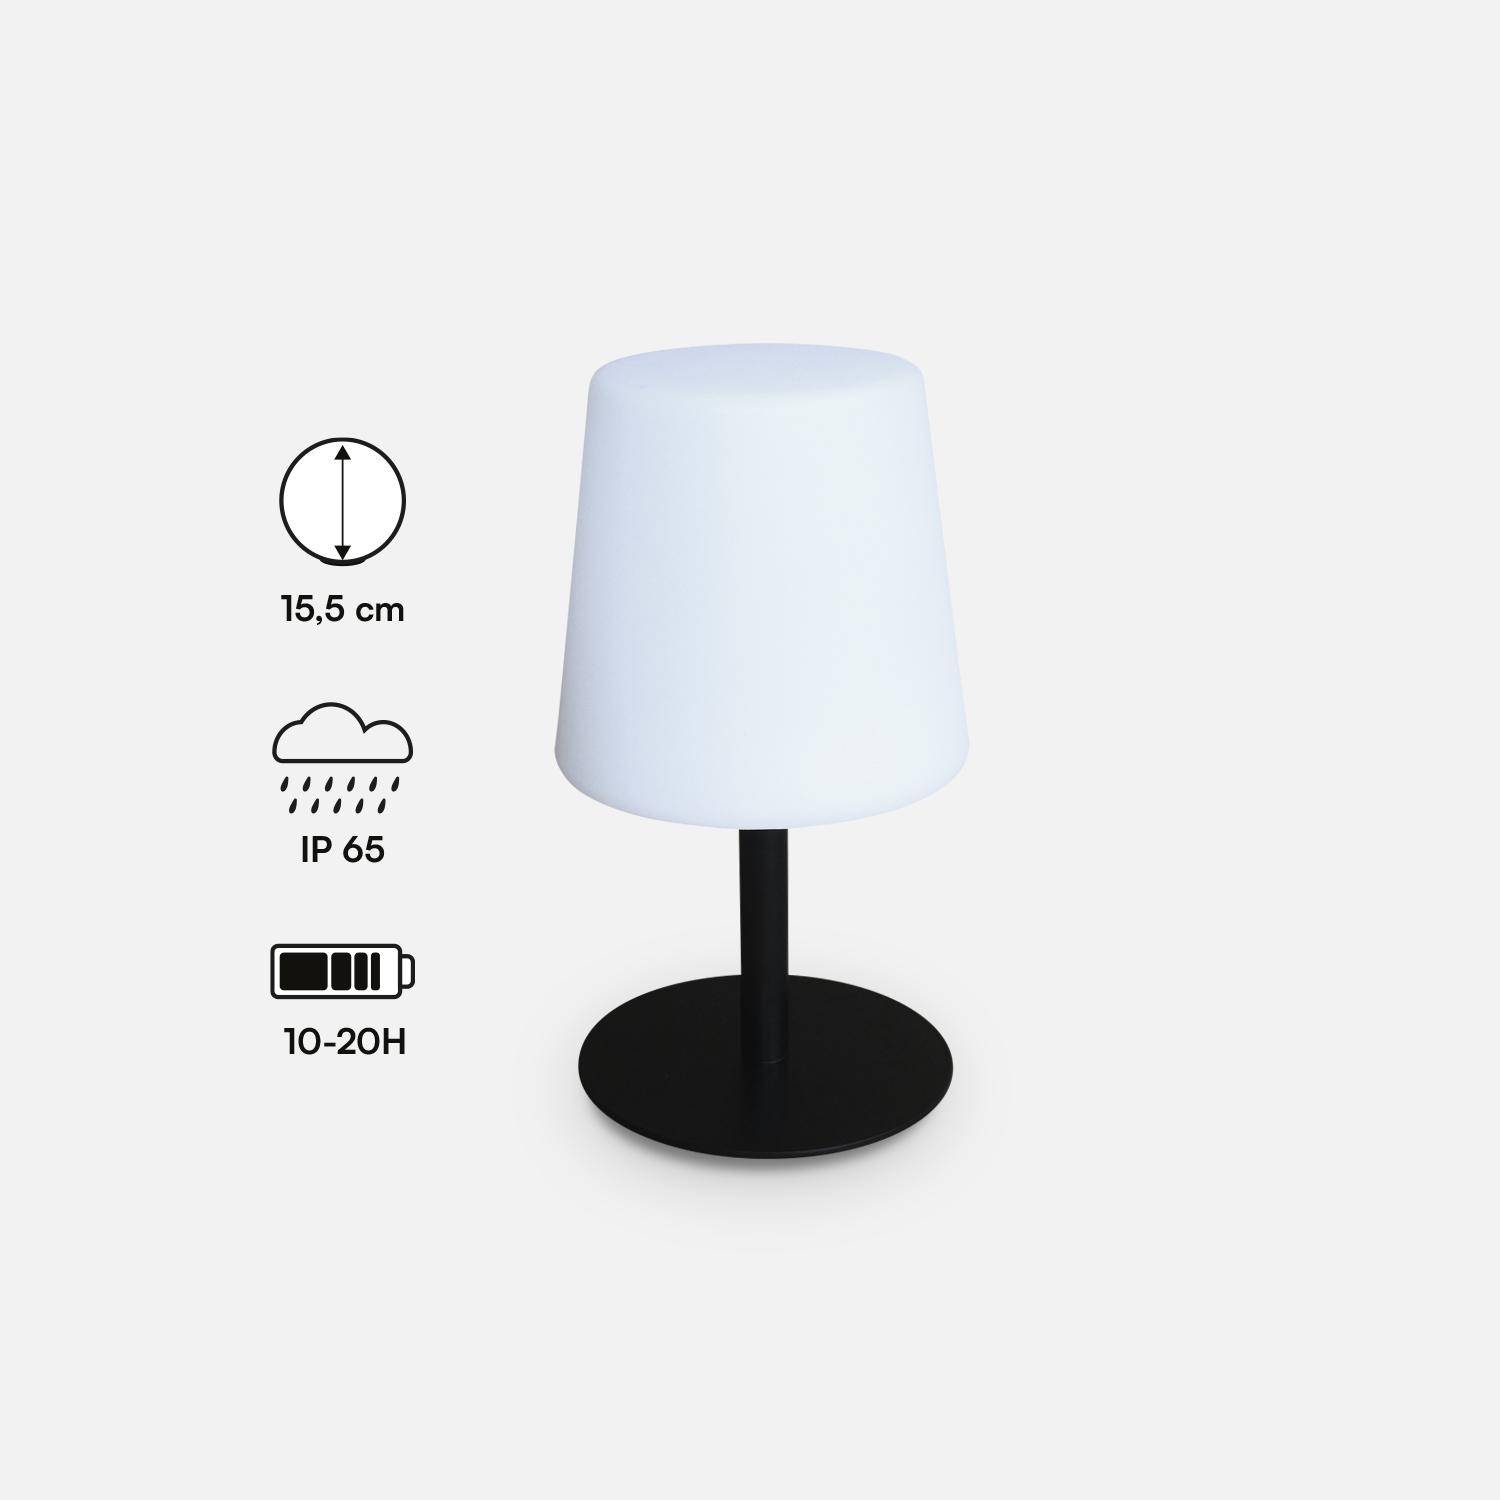 LAMPADA S COLOR - Lampe de table LED de 28cm noire - Lampe de table décorative lumineuse, Ø 16cm,sweeek,Photo4